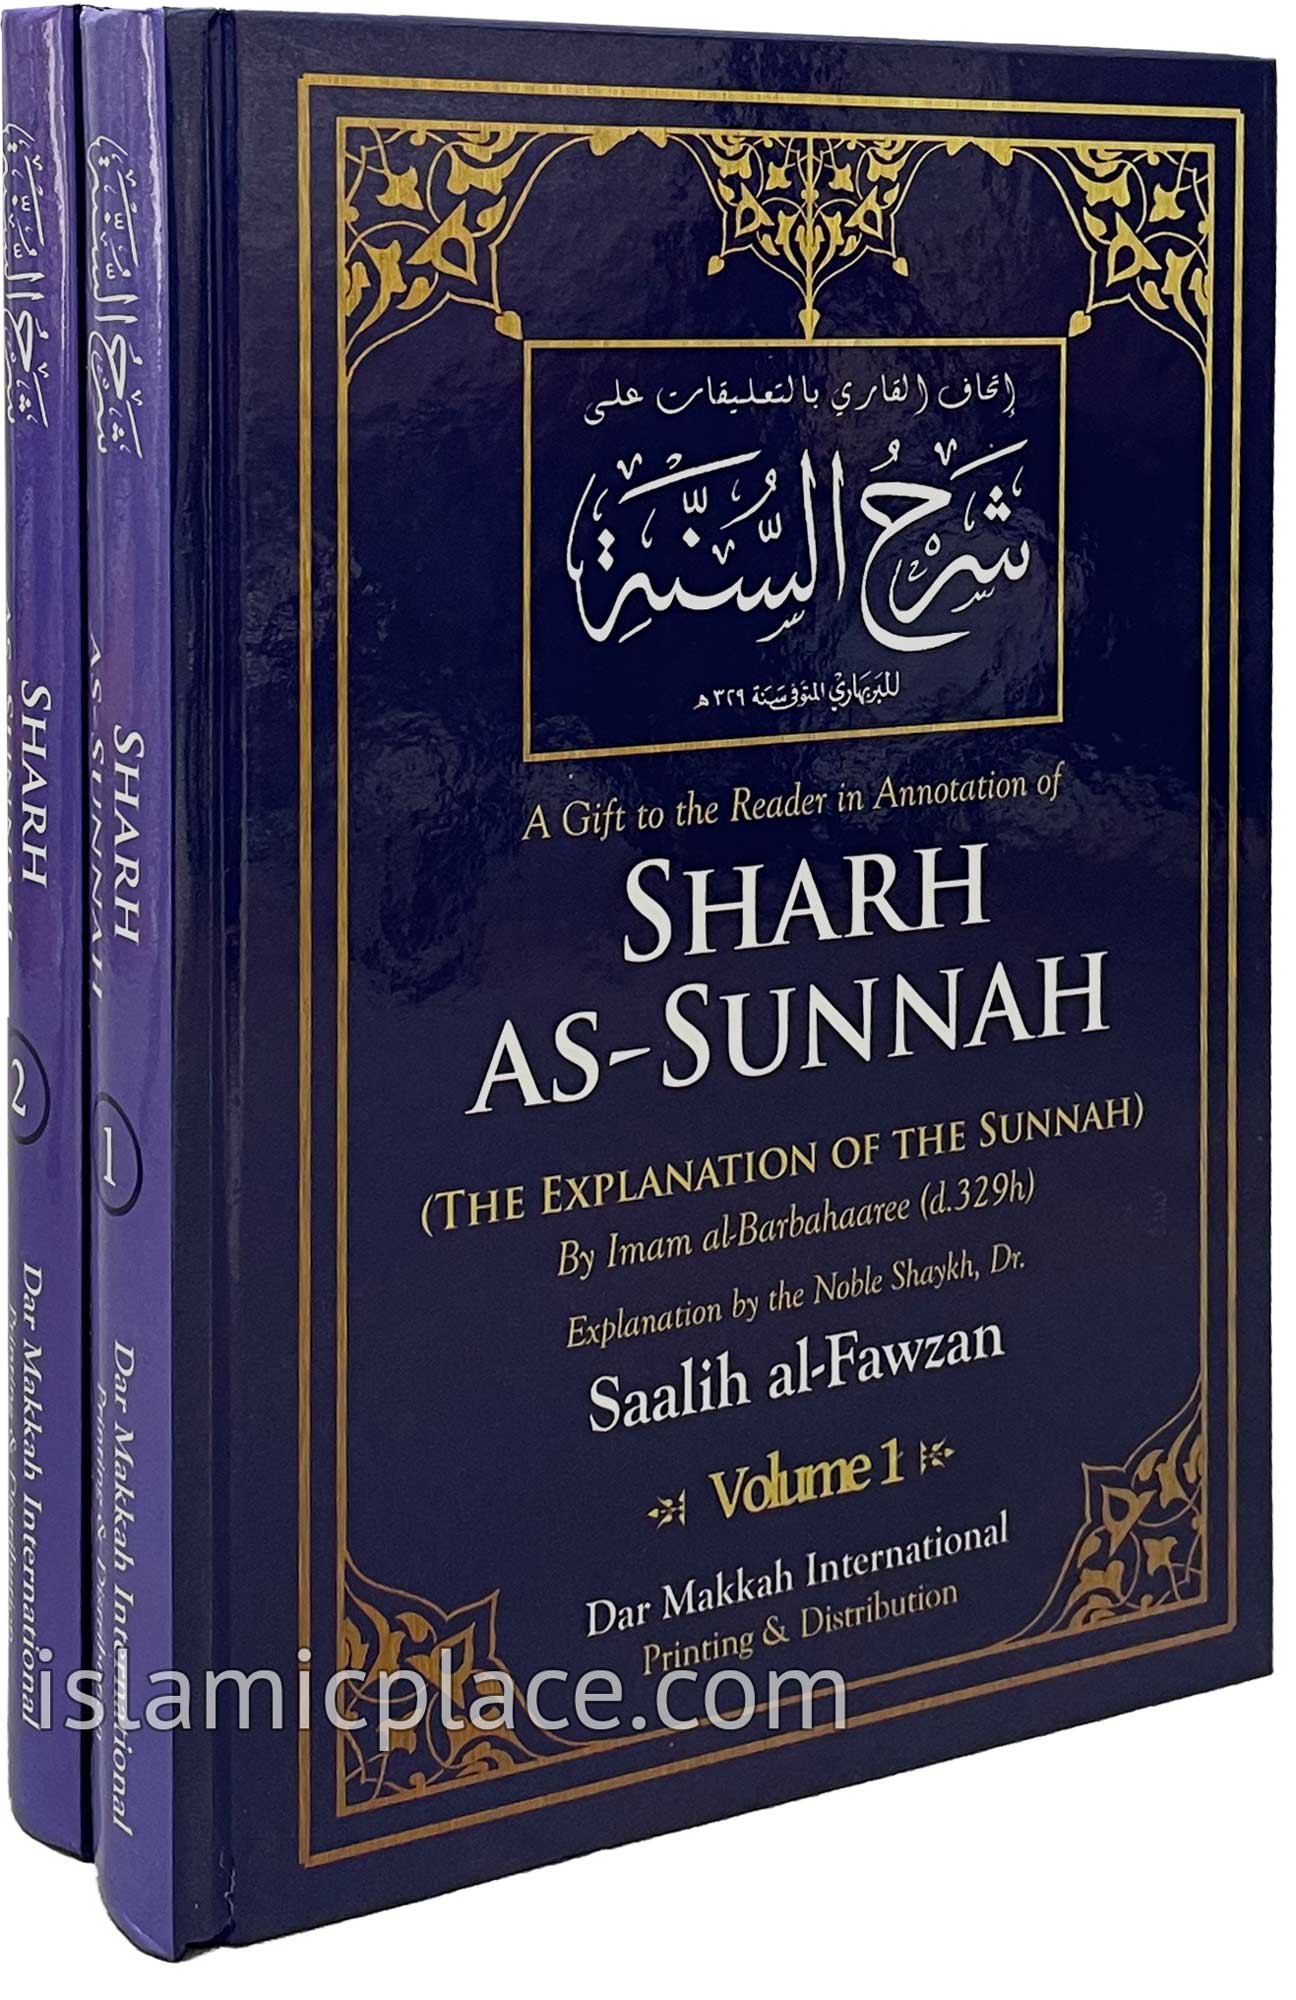 [2 vol set] Sharh As-Sunnah (The Explanation of the Sunnah)